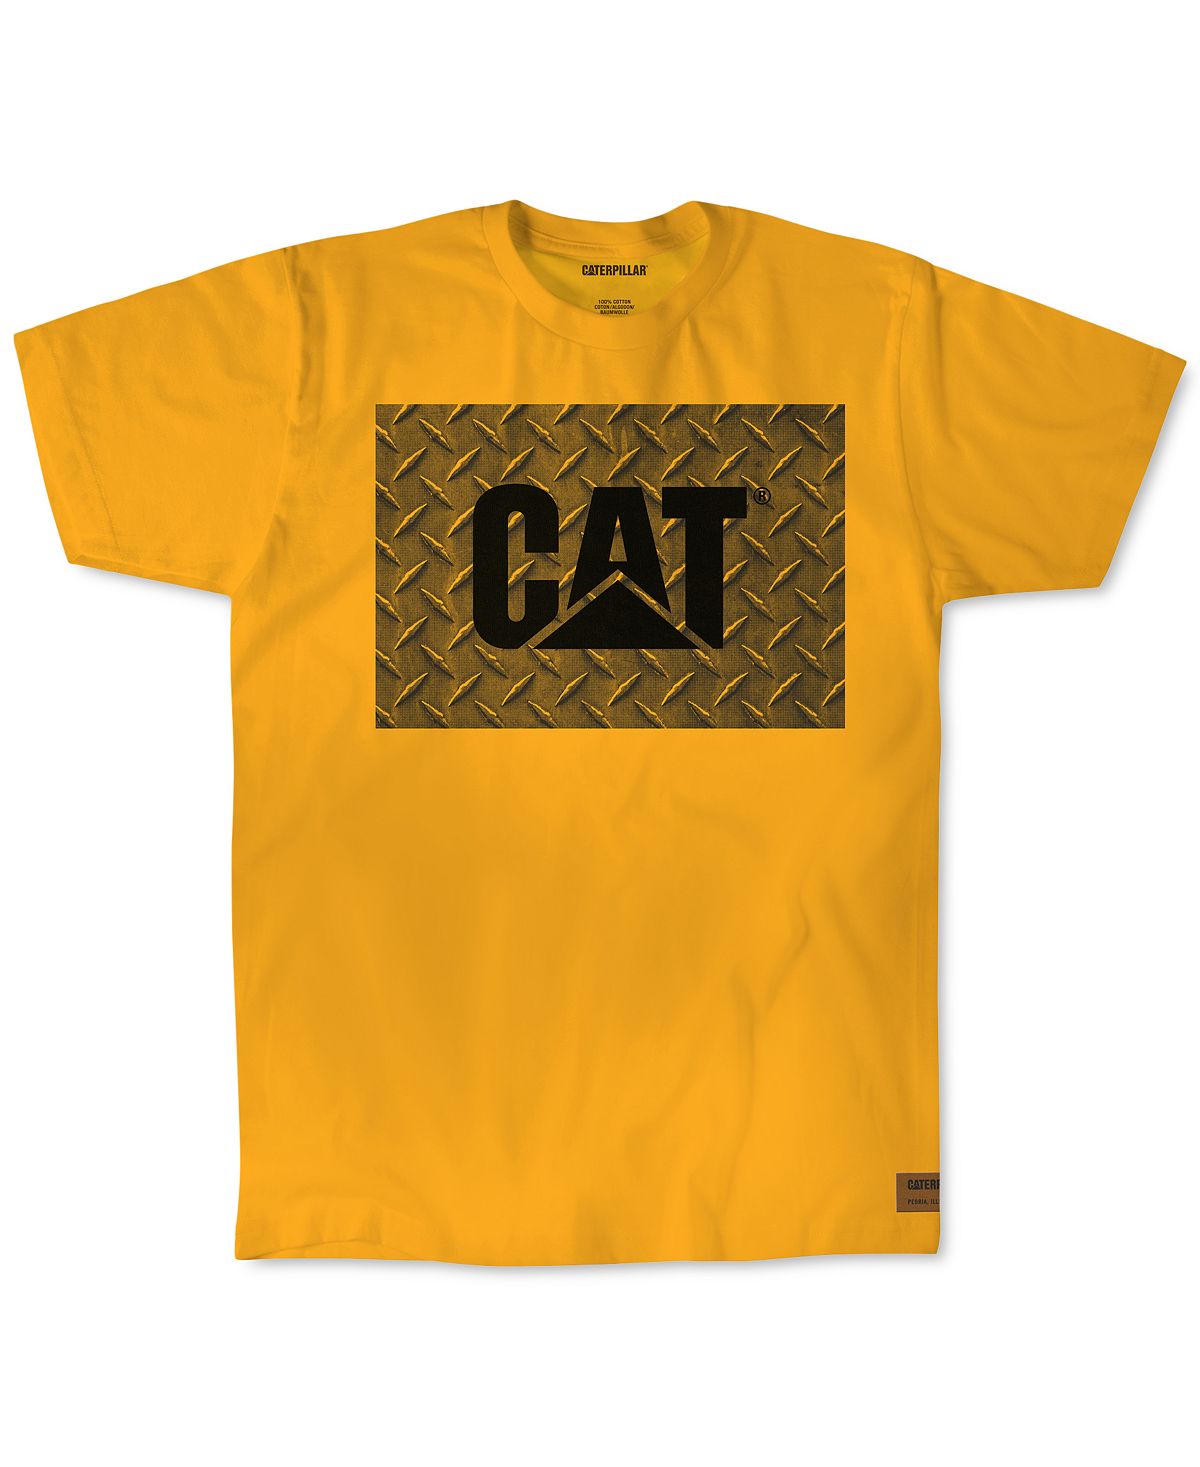 Caterpillar Work Diamond Plate Logo Graphic T-shirt Yellow